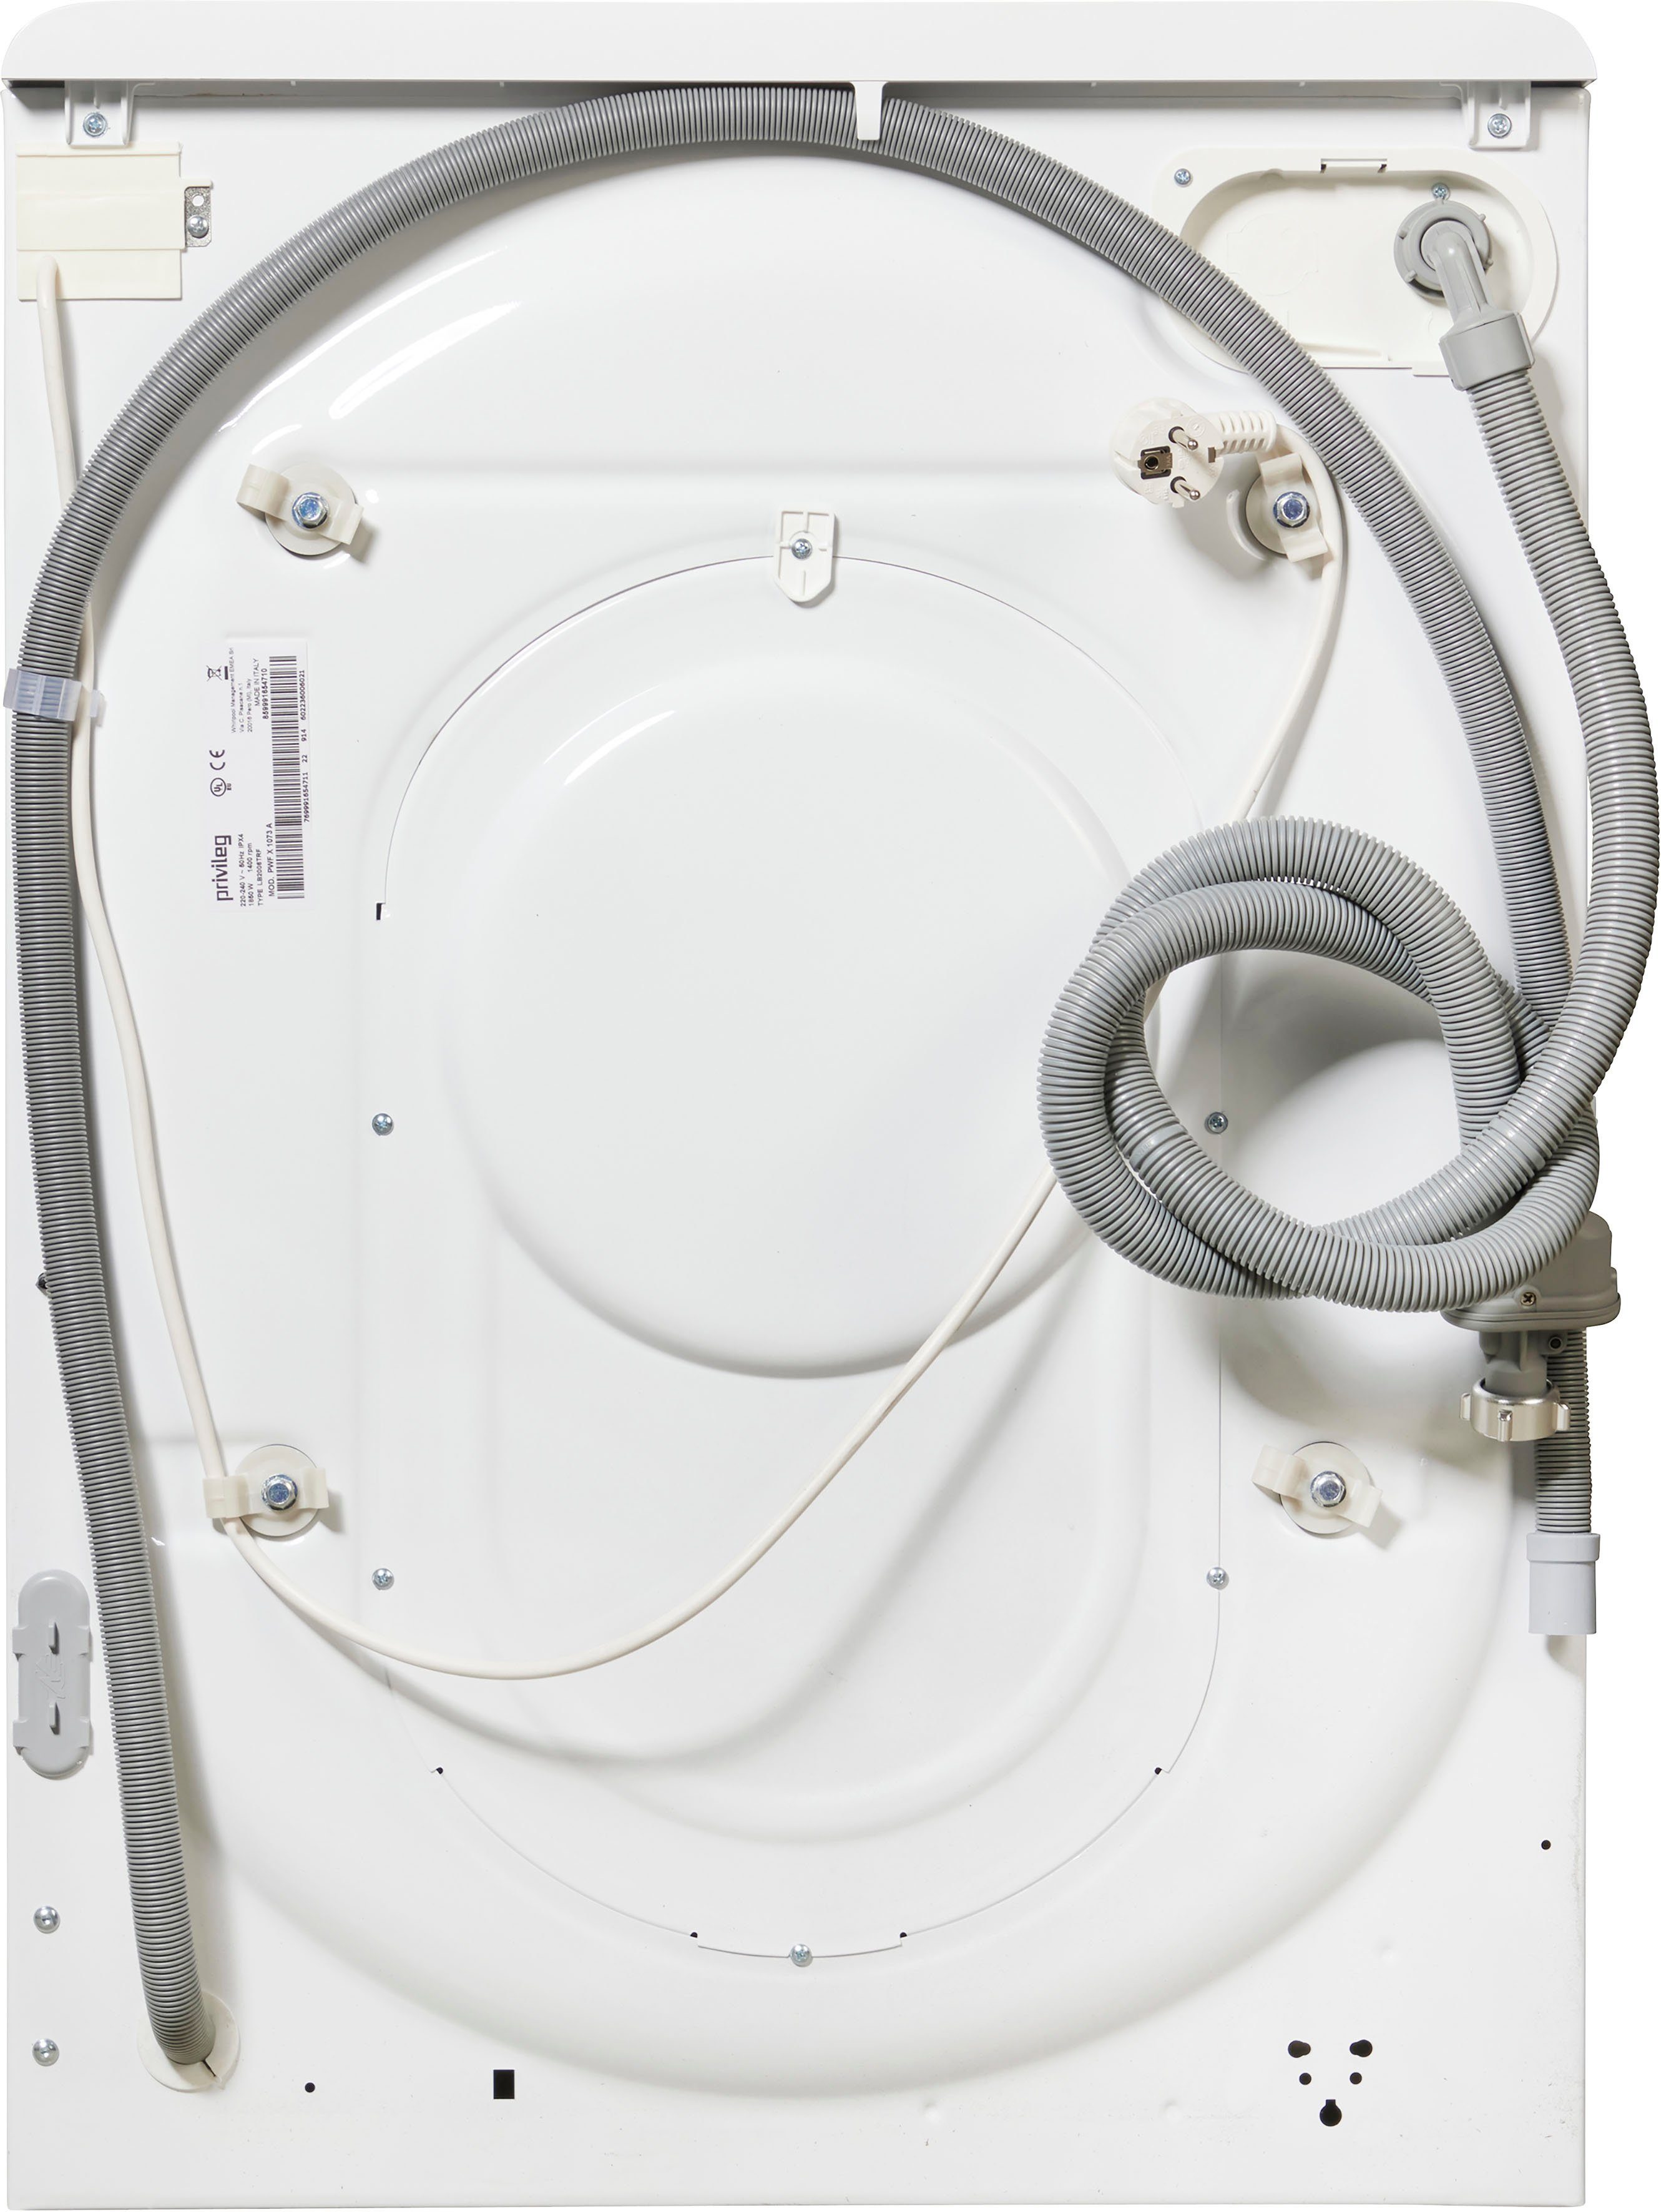 Privileg Waschmaschine PWF X 1073 50 1400 A, kg, Herstellergarantie 10 Monate U/min